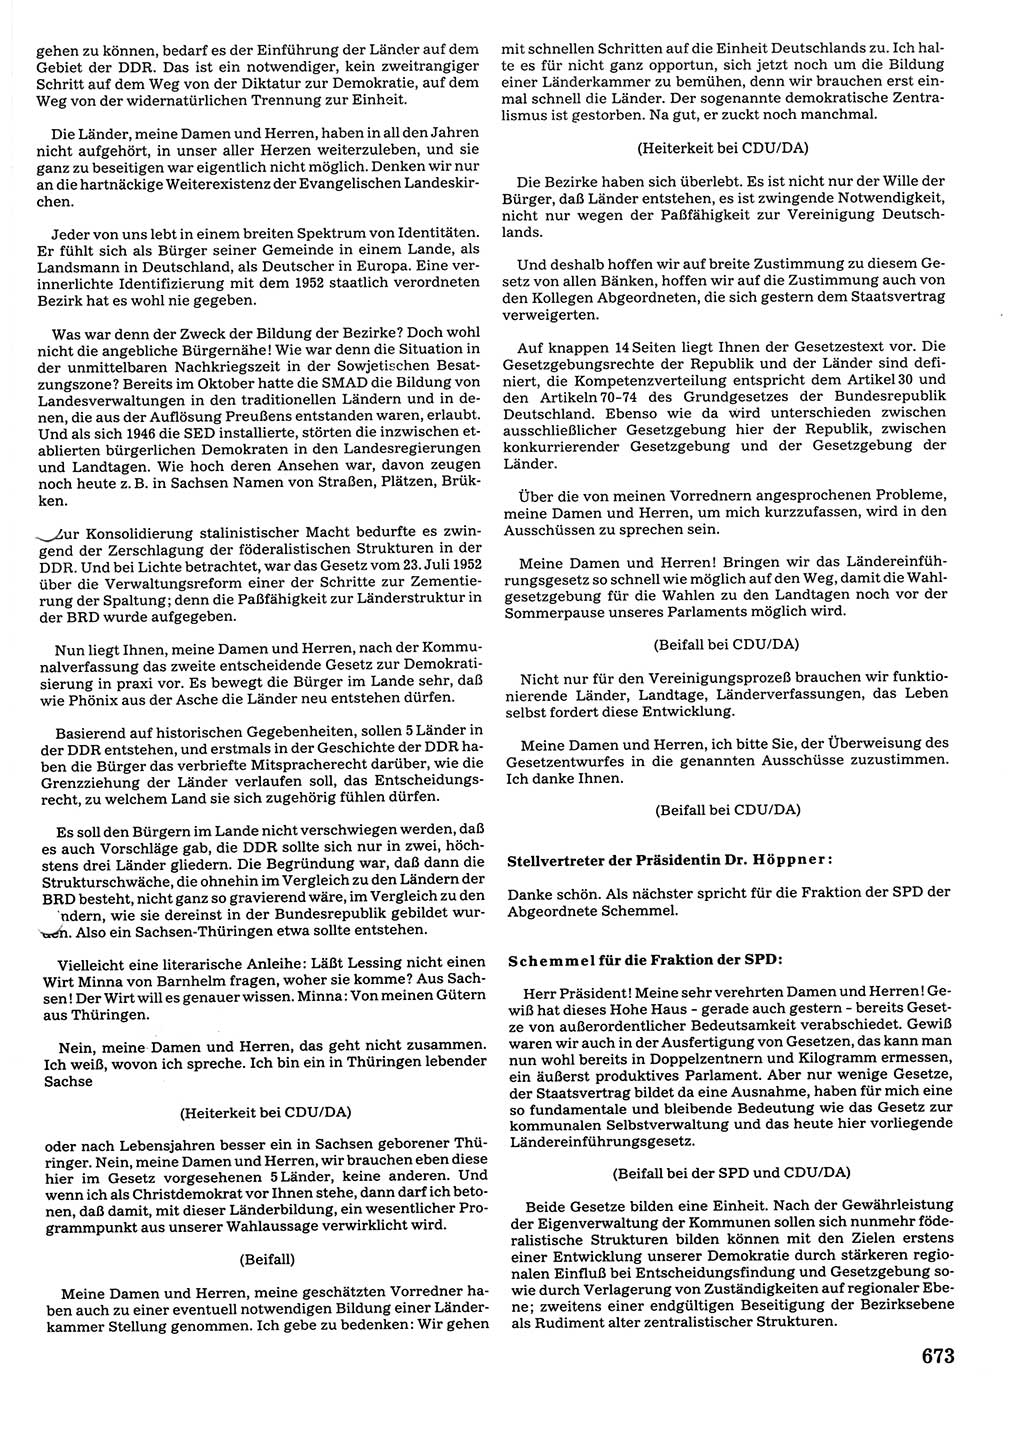 Tagungen der Volkskammer (VK) der Deutschen Demokratischen Republik (DDR), 10. Wahlperiode 1990, Seite 673 (VK. DDR 10. WP. 1990, Prot. Tg. 1-38, 5.4.-2.10.1990, S. 673)